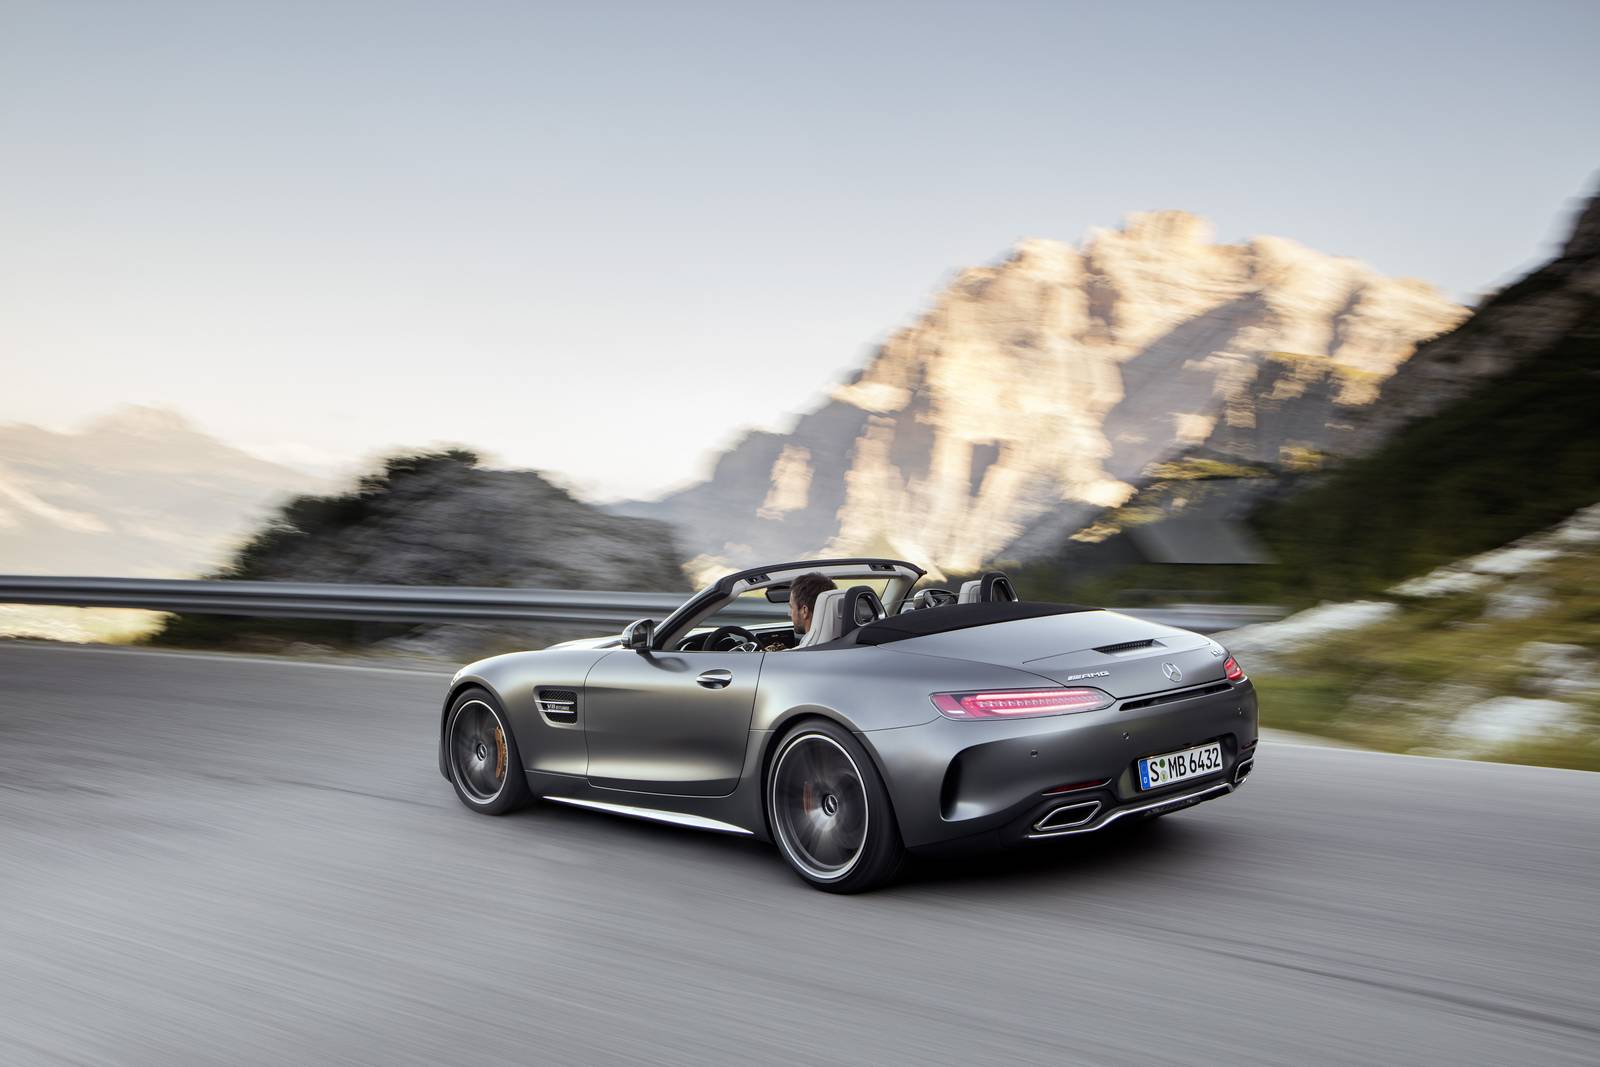 Mercedes обгоняет BMW как лидер в продаже автомобилей класса люкс